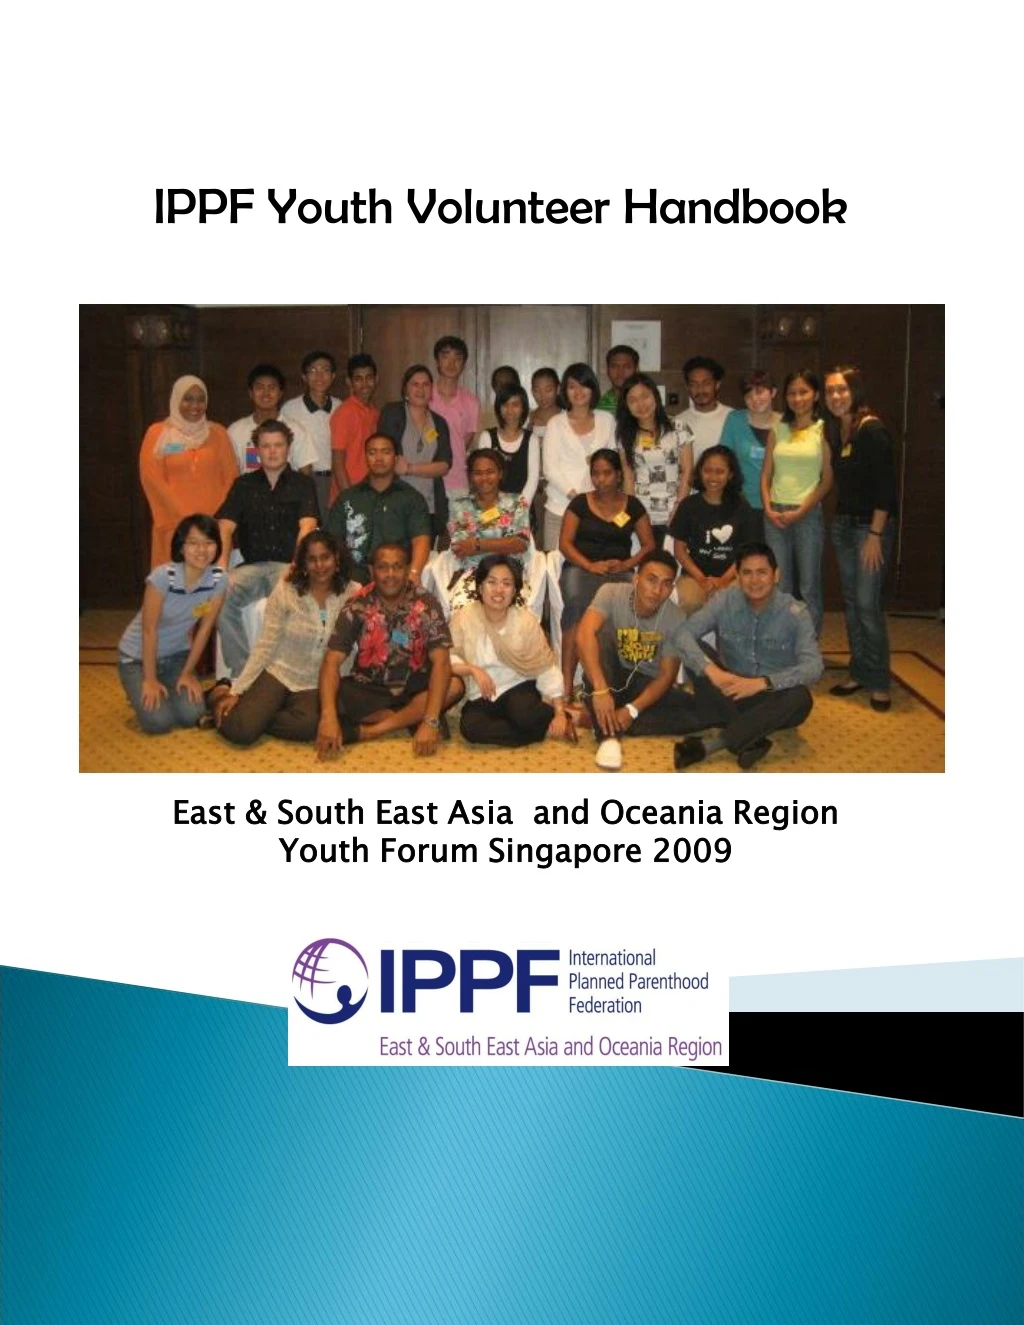 ippf youth volunteer handbook